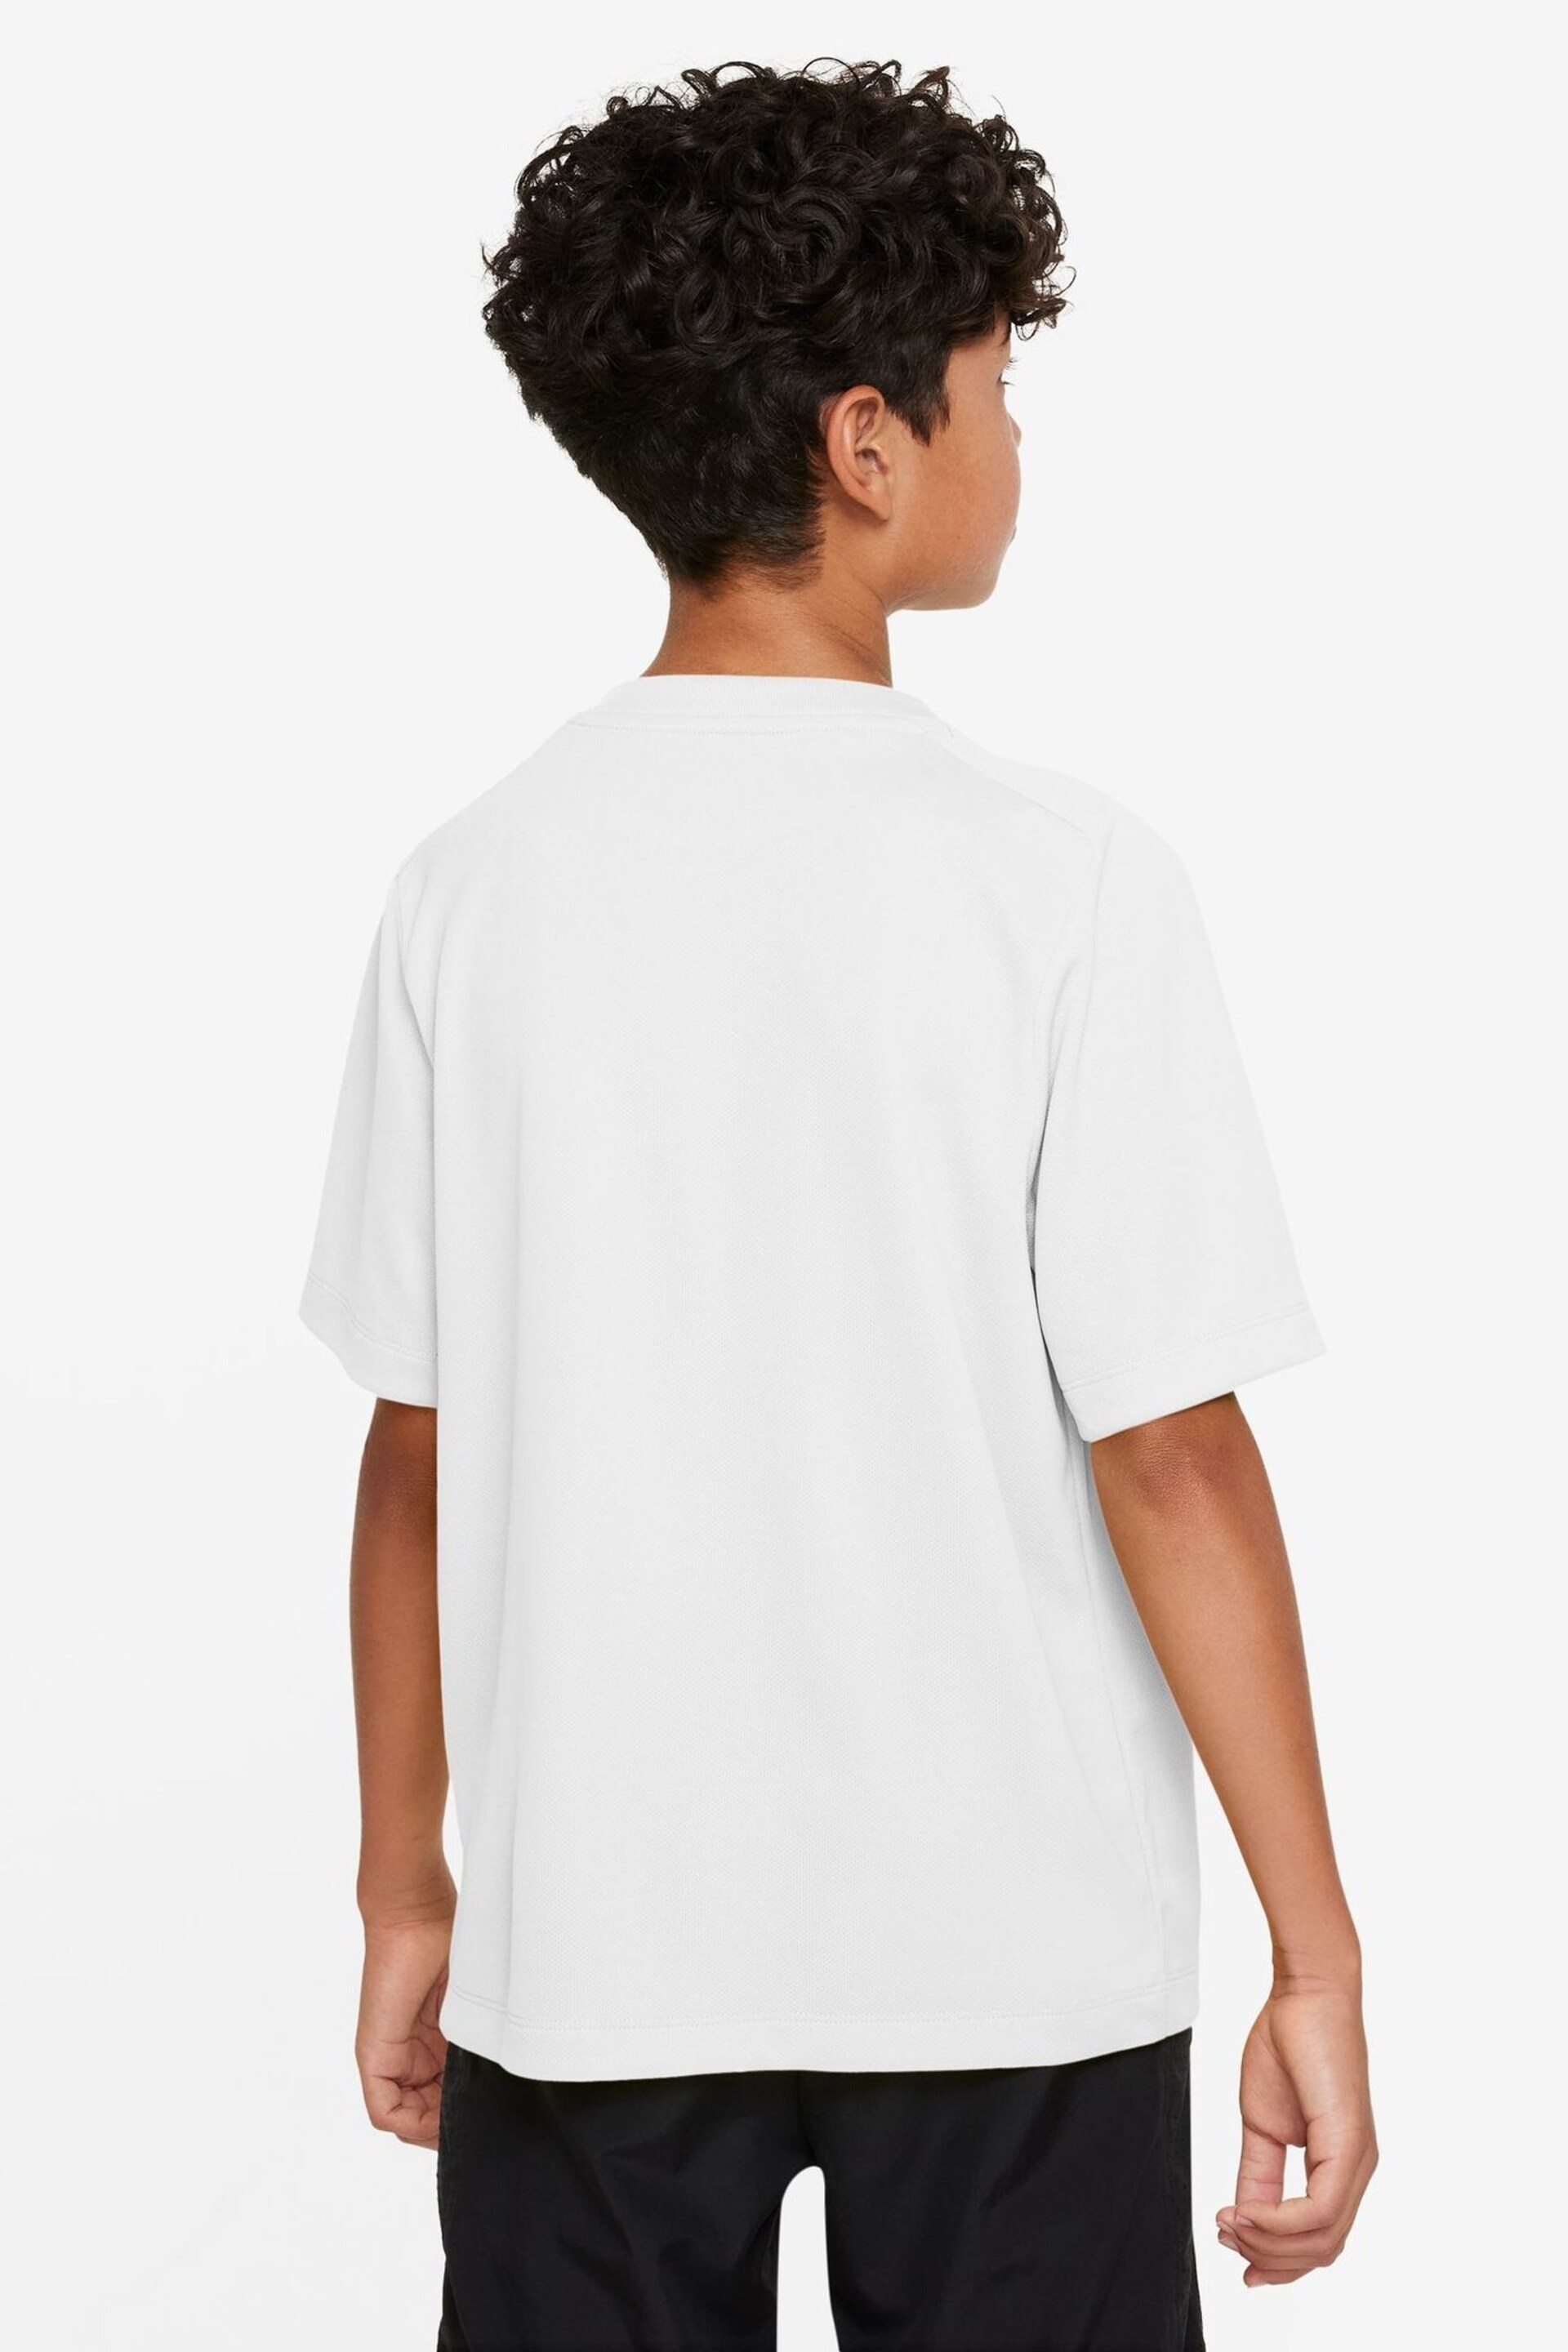 Nike White Dri-FIT Multi + Training T-Shirt - Image 6 of 7